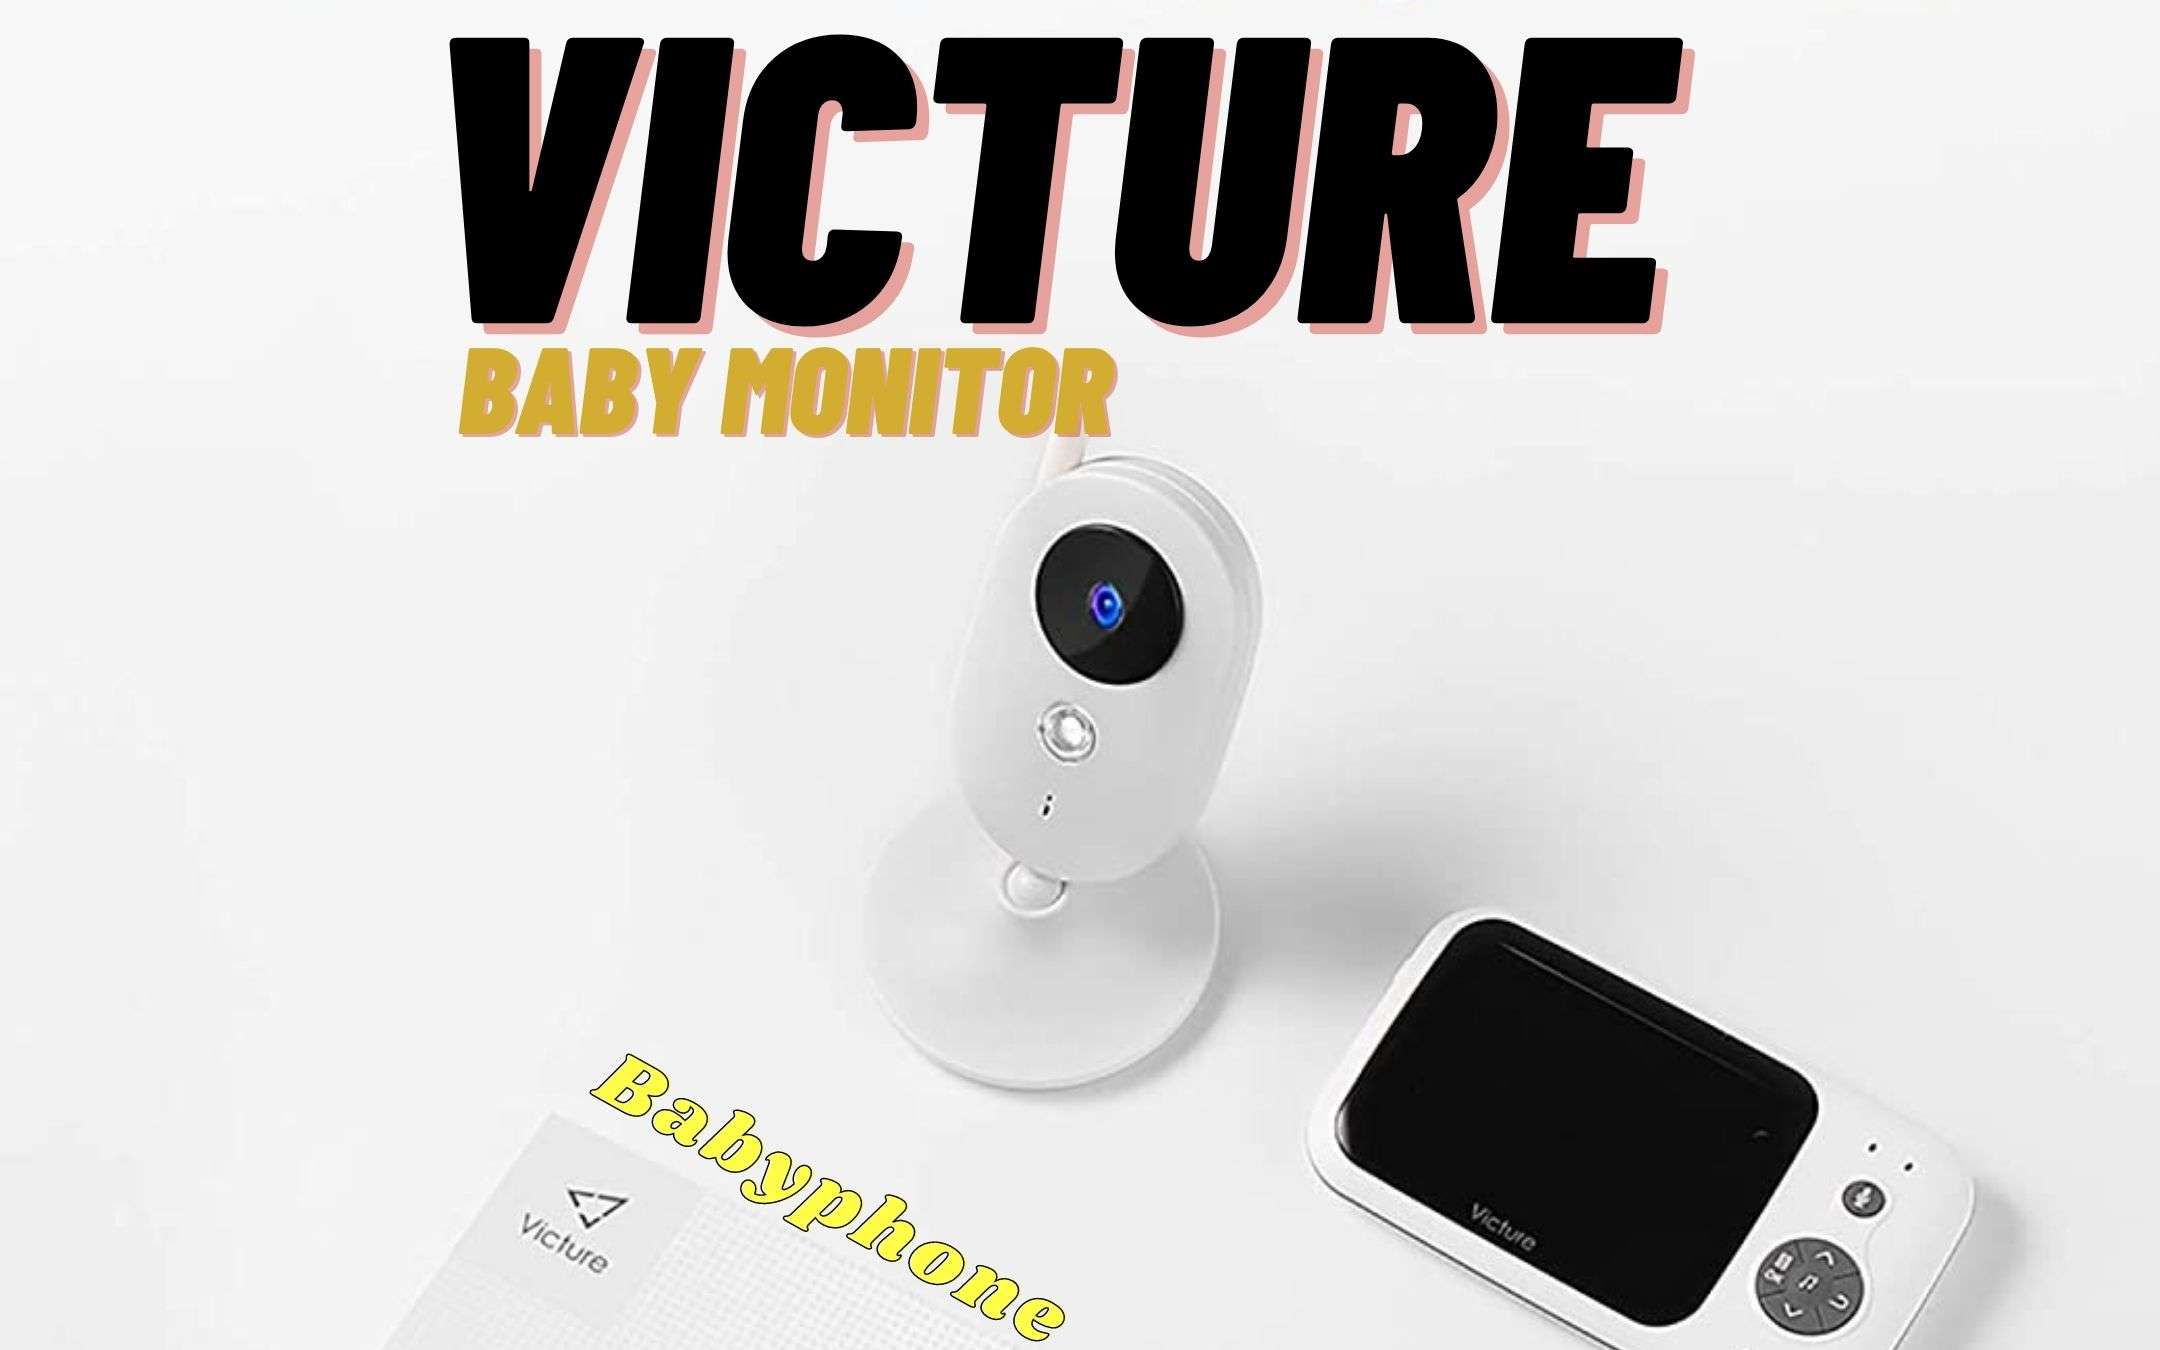 Victure Baby Monitor in offerta lampo su Amazon!